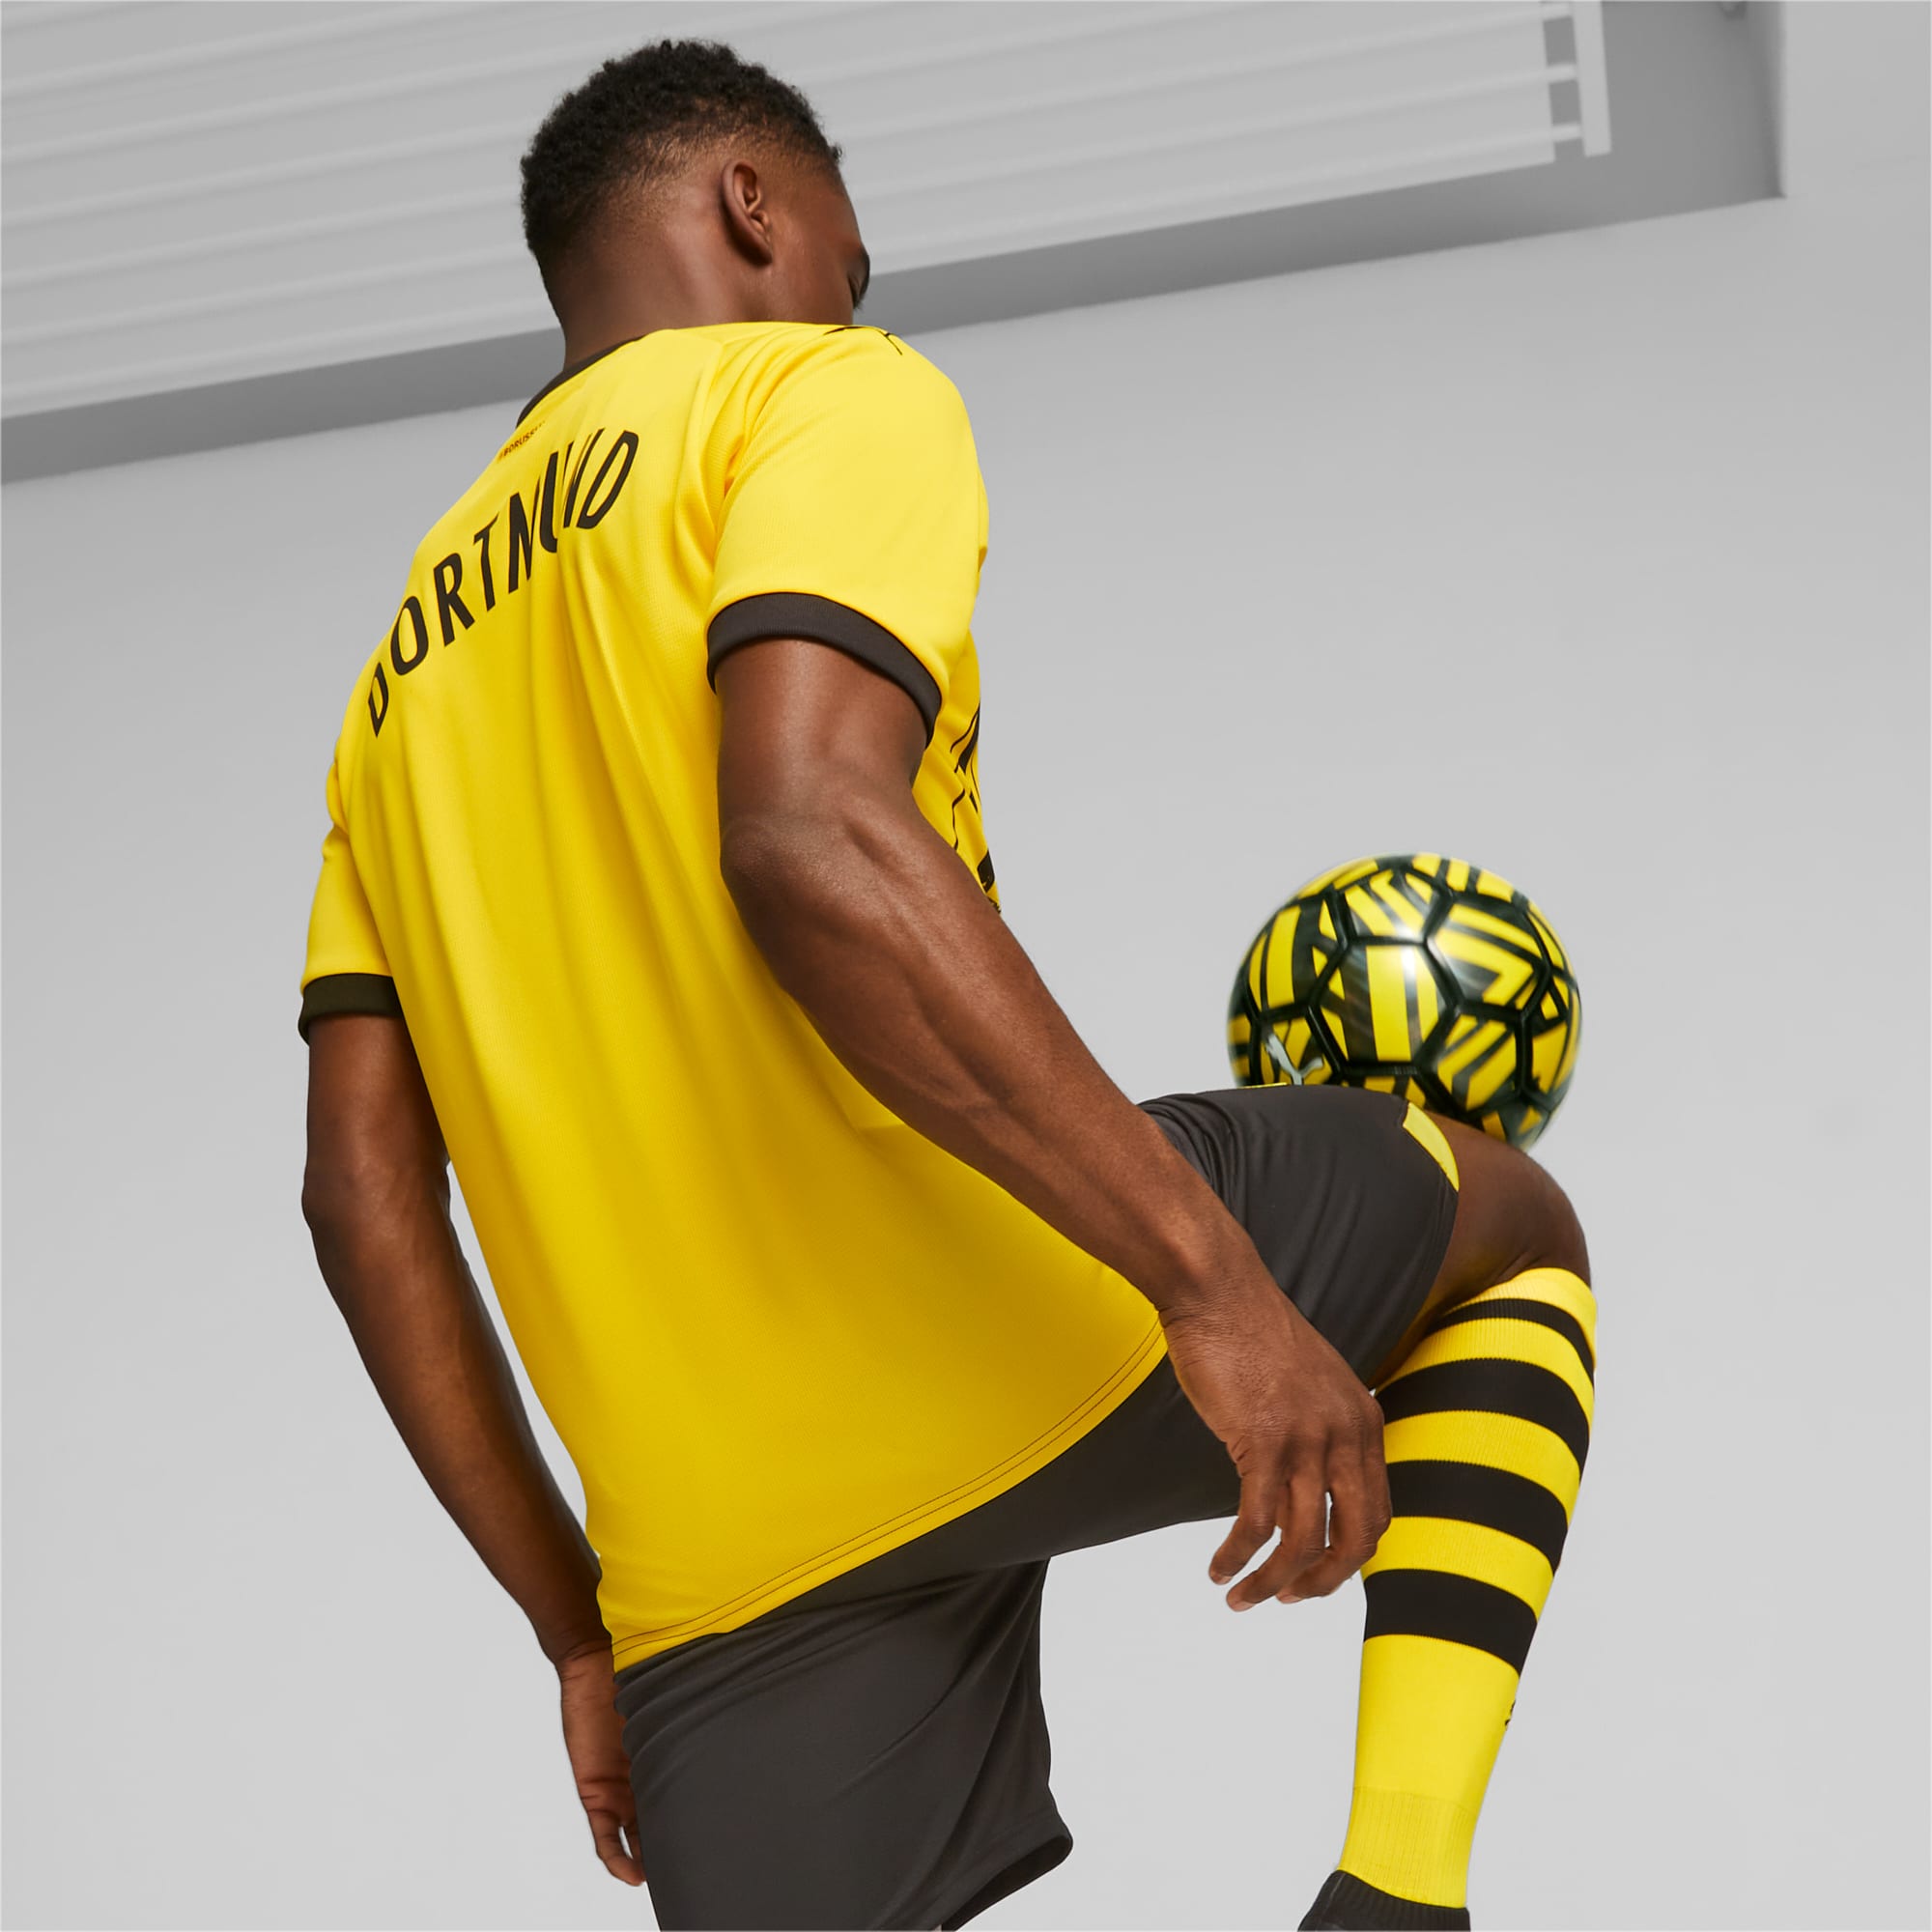 𝗖𝗔𝗠𝗜𝗦𝗘𝗧𝗔 𝗖𝗥𝗘𝗔𝗗𝗔 𝗣𝗢𝗥 𝗙𝗔𝗡𝗦! 👕💛 Borussia Dortmund  recibió más de 15.000 diseños como propuestas para la camiseta de la  próxima temporada…